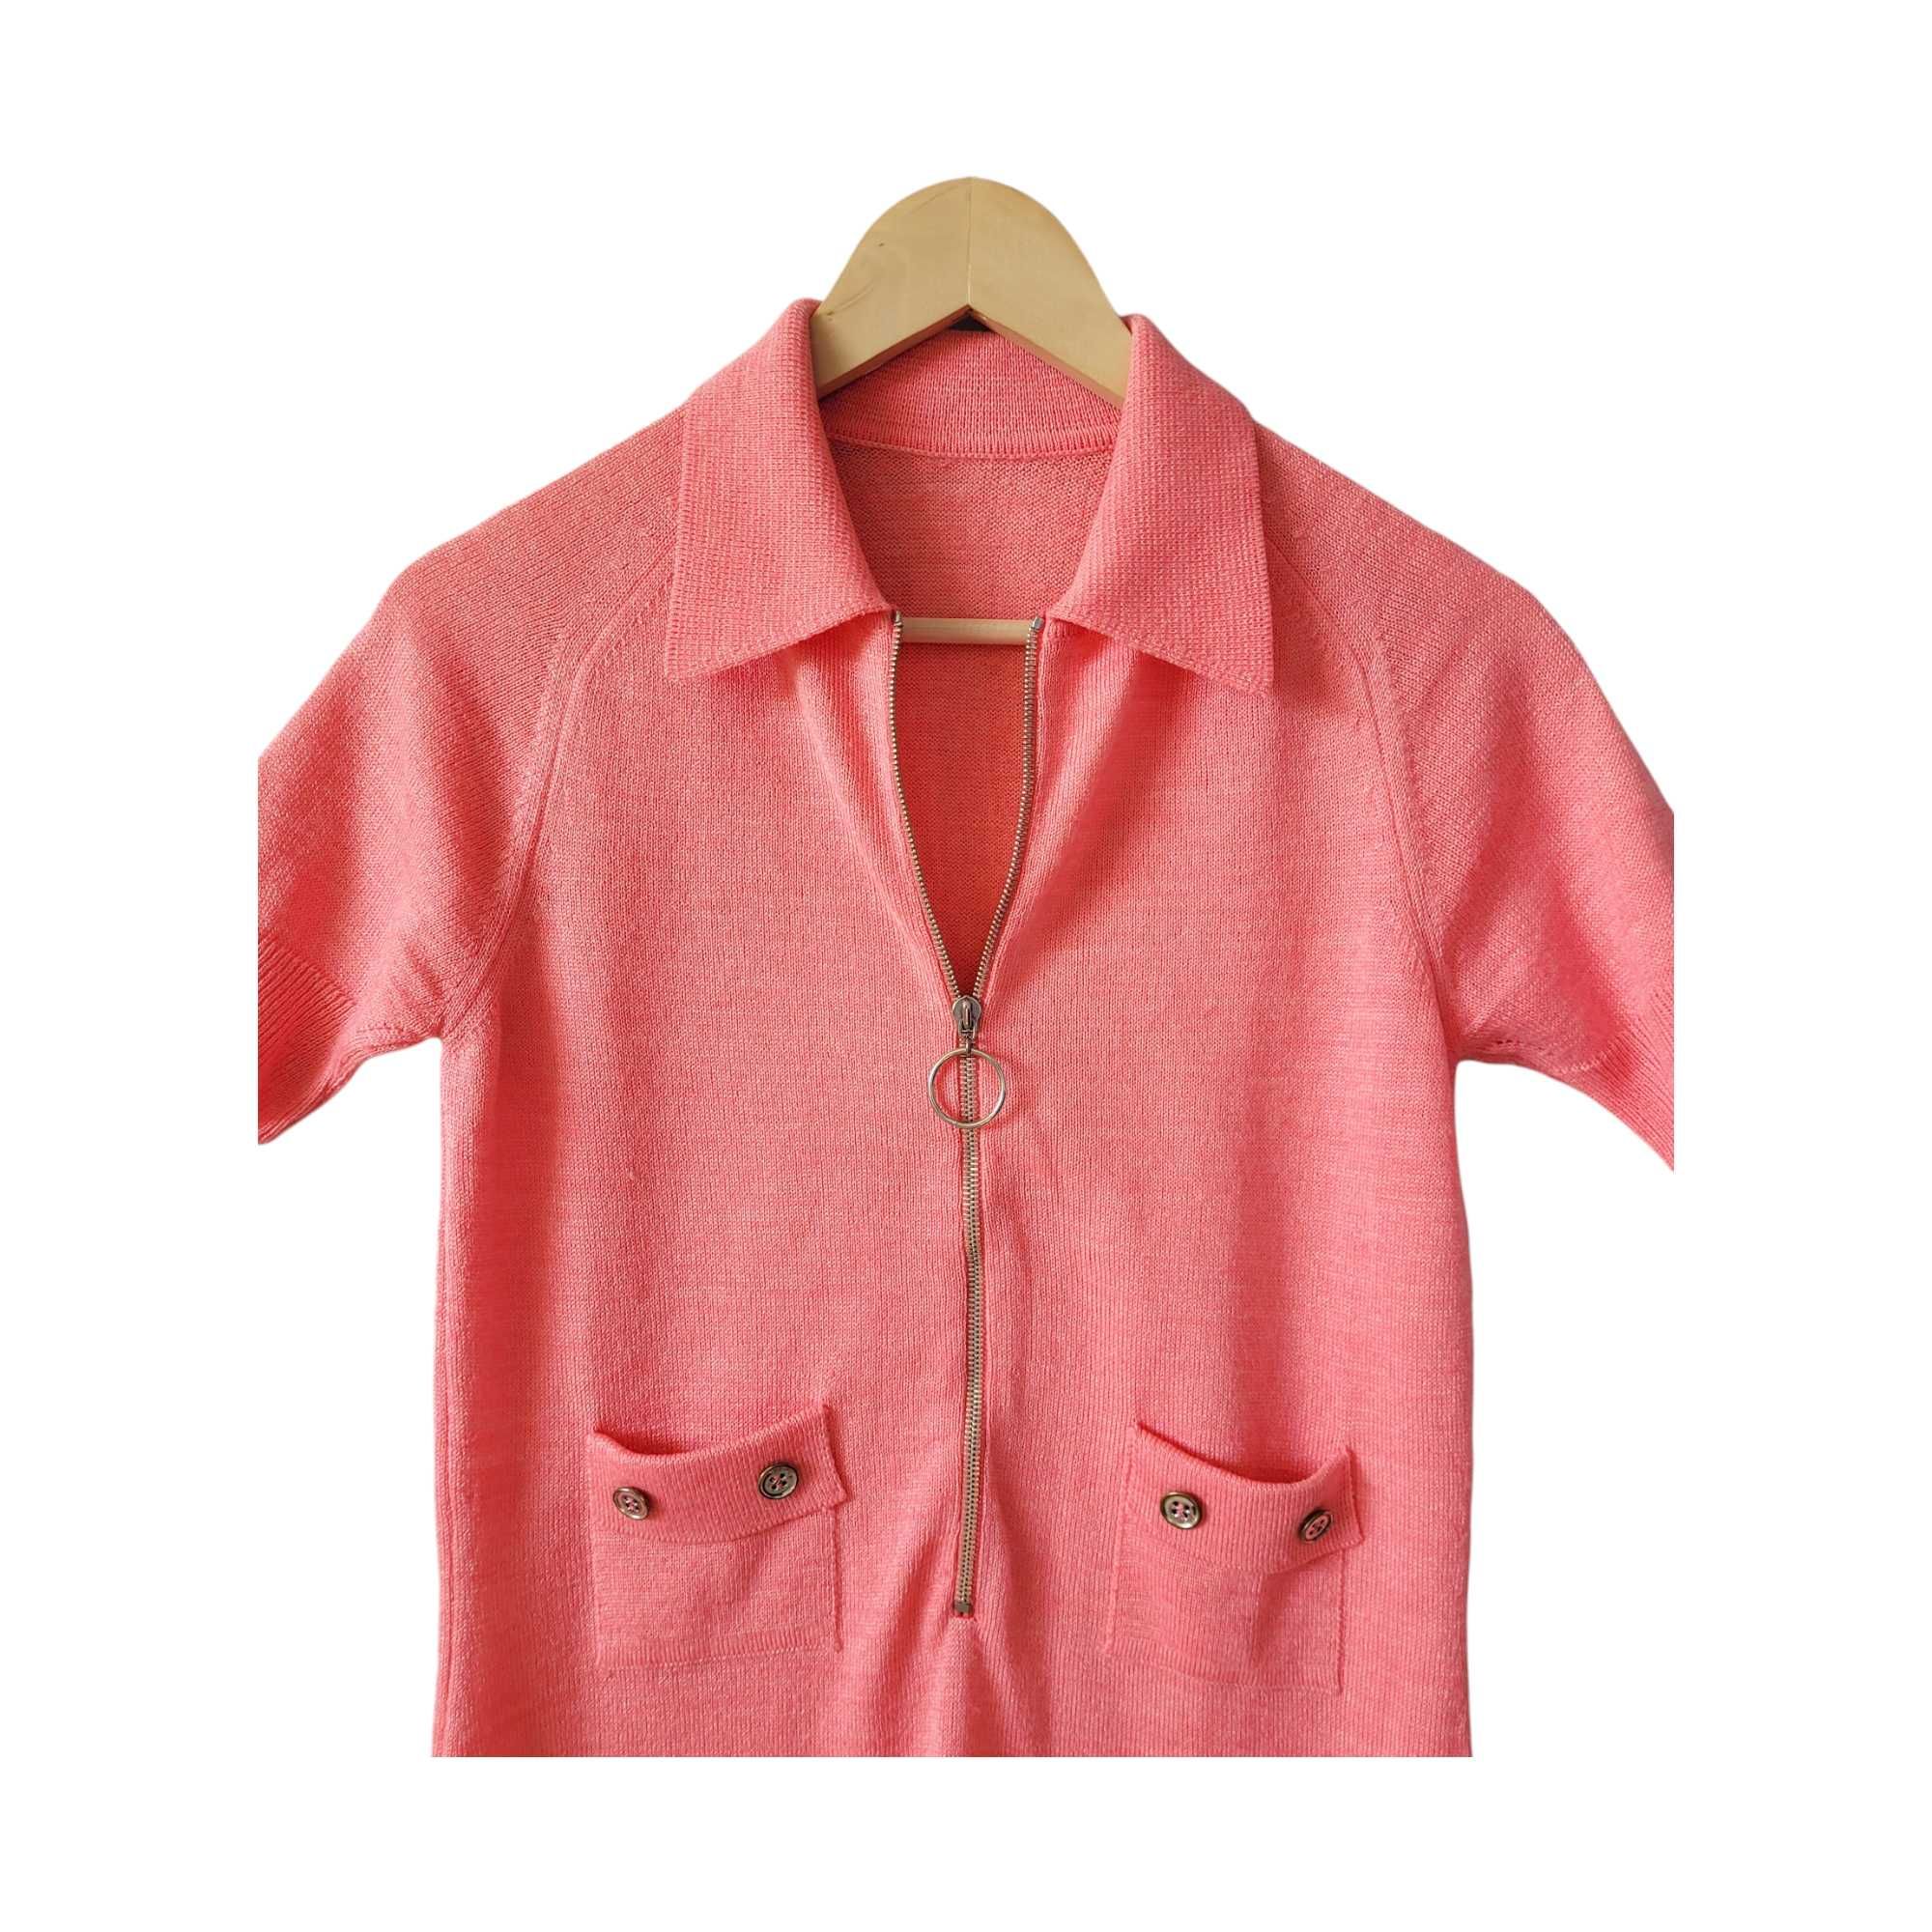 Różowa dzianinowa sukienka vintage retro S/M lata 70 krótki rękaw